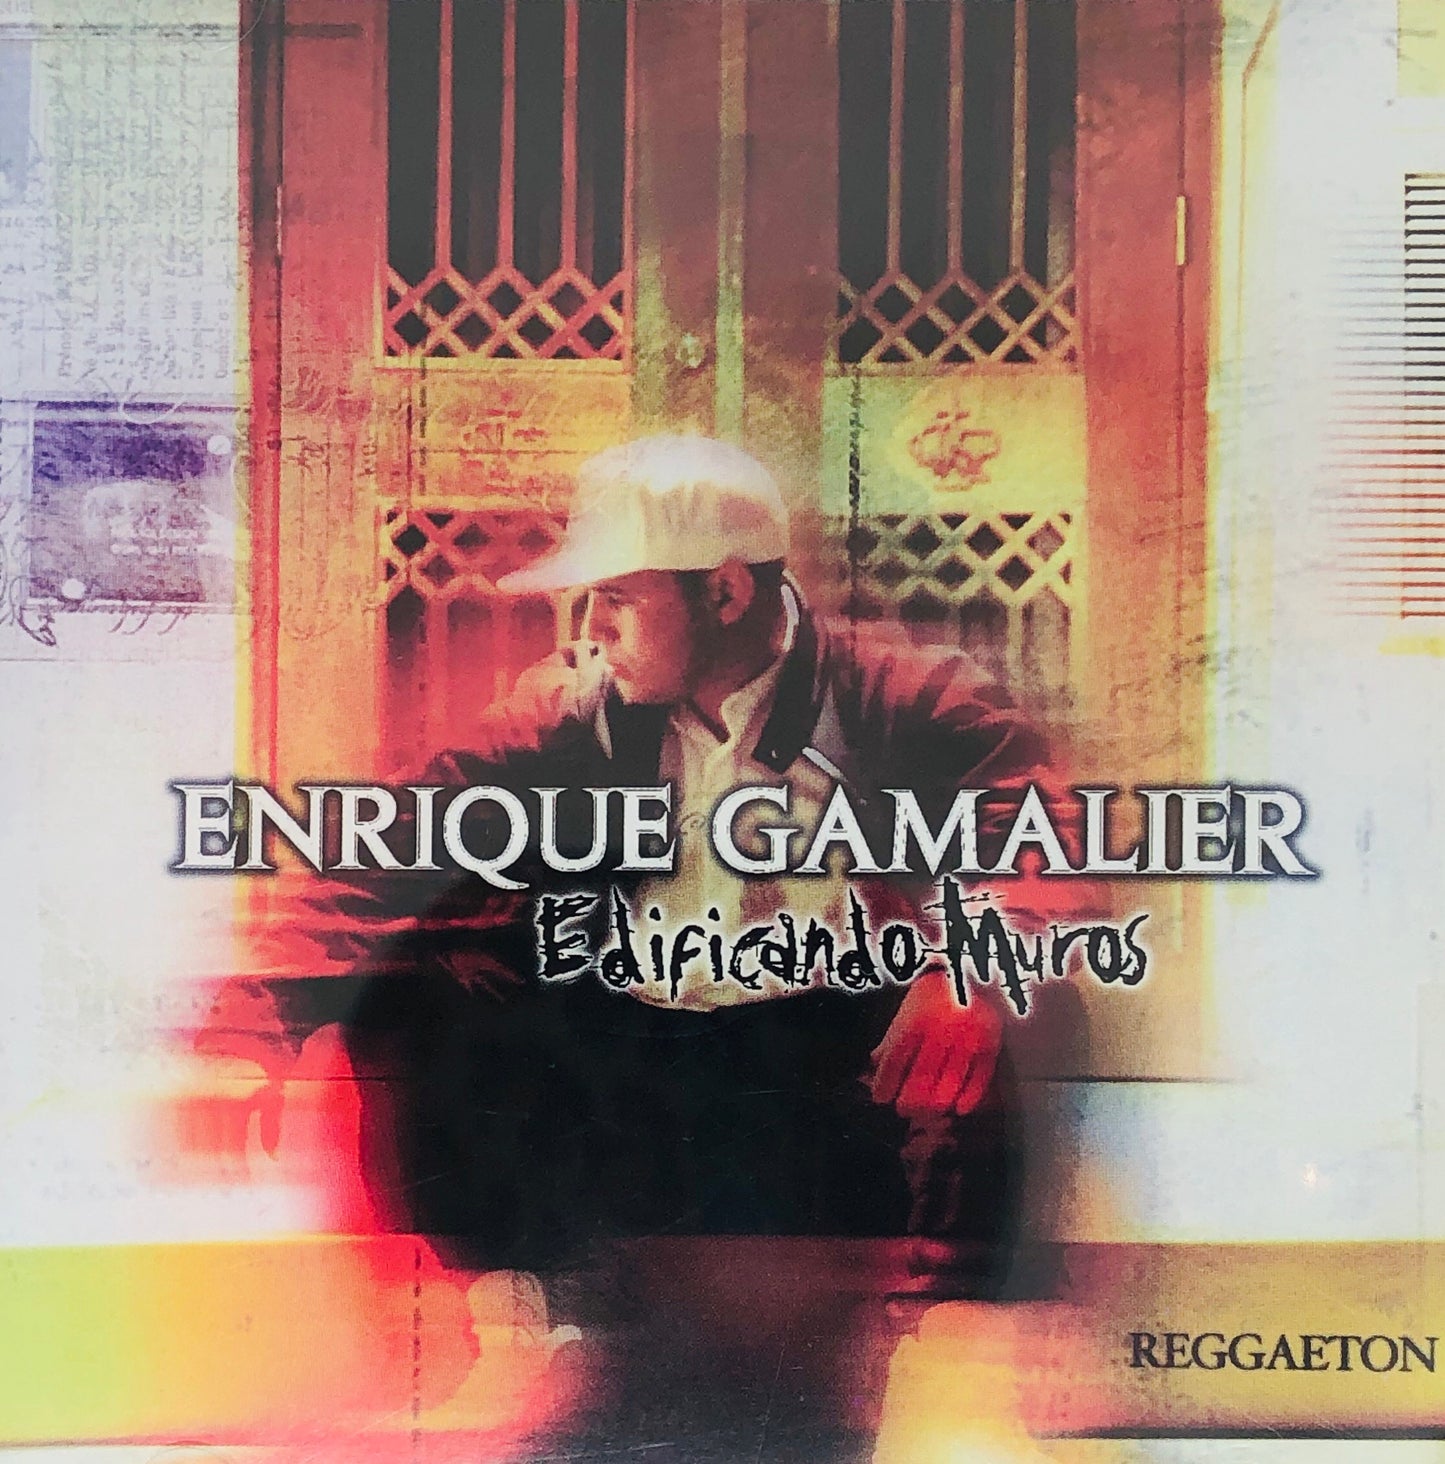 CD - Edificando Muros - Enrique Gamalier - Reggaeton Cristiano